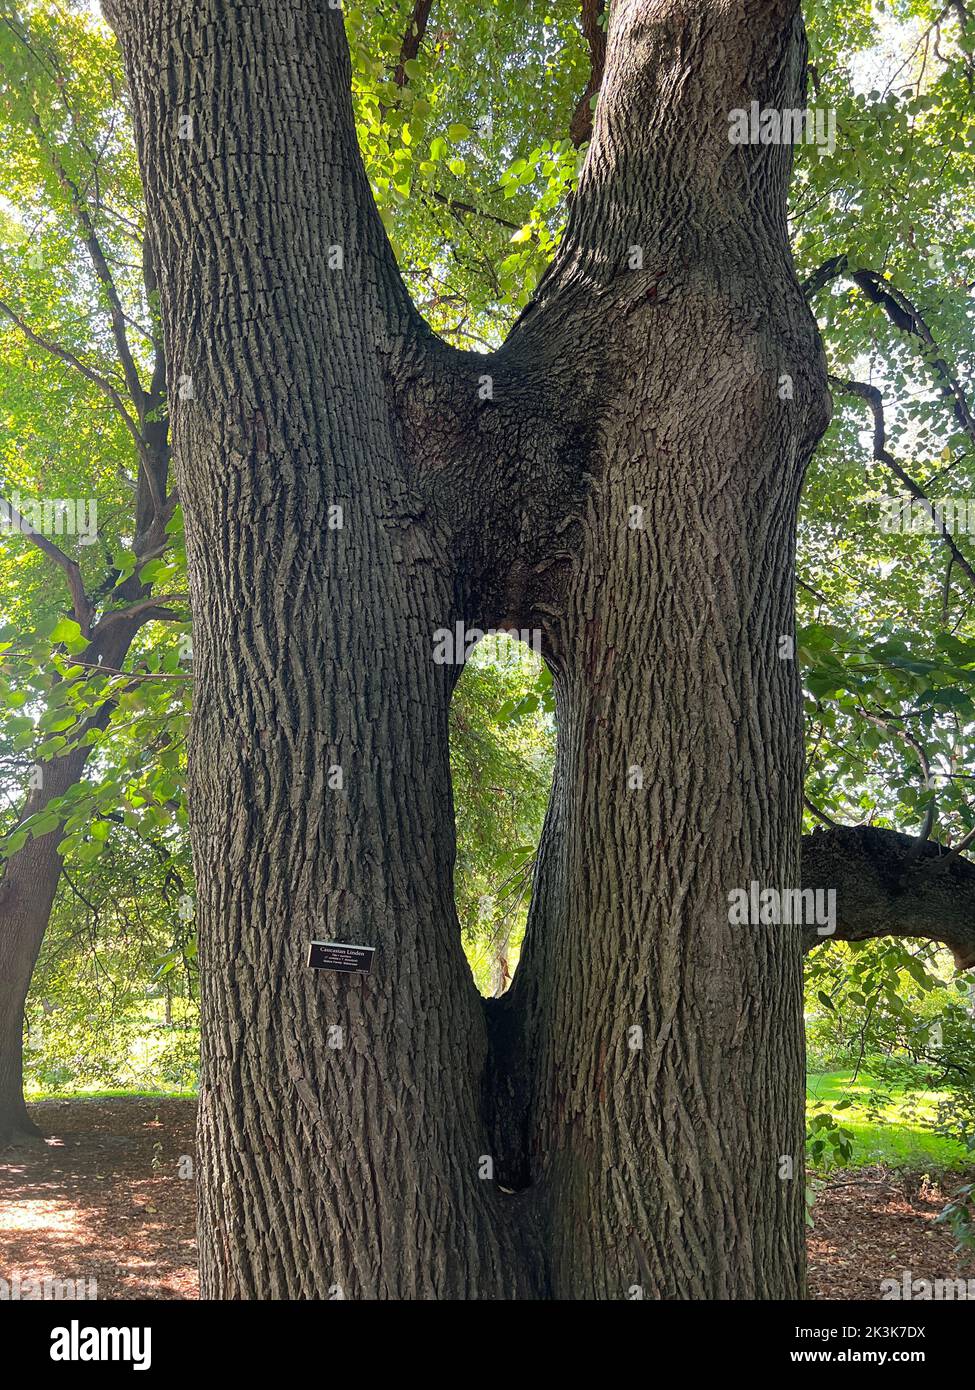 Unique Caucasien Linden Tree où deux troncs ont grandi ensemble pour le soutien mutuel. Prospet Park, Brooklyn, New York. Banque D'Images